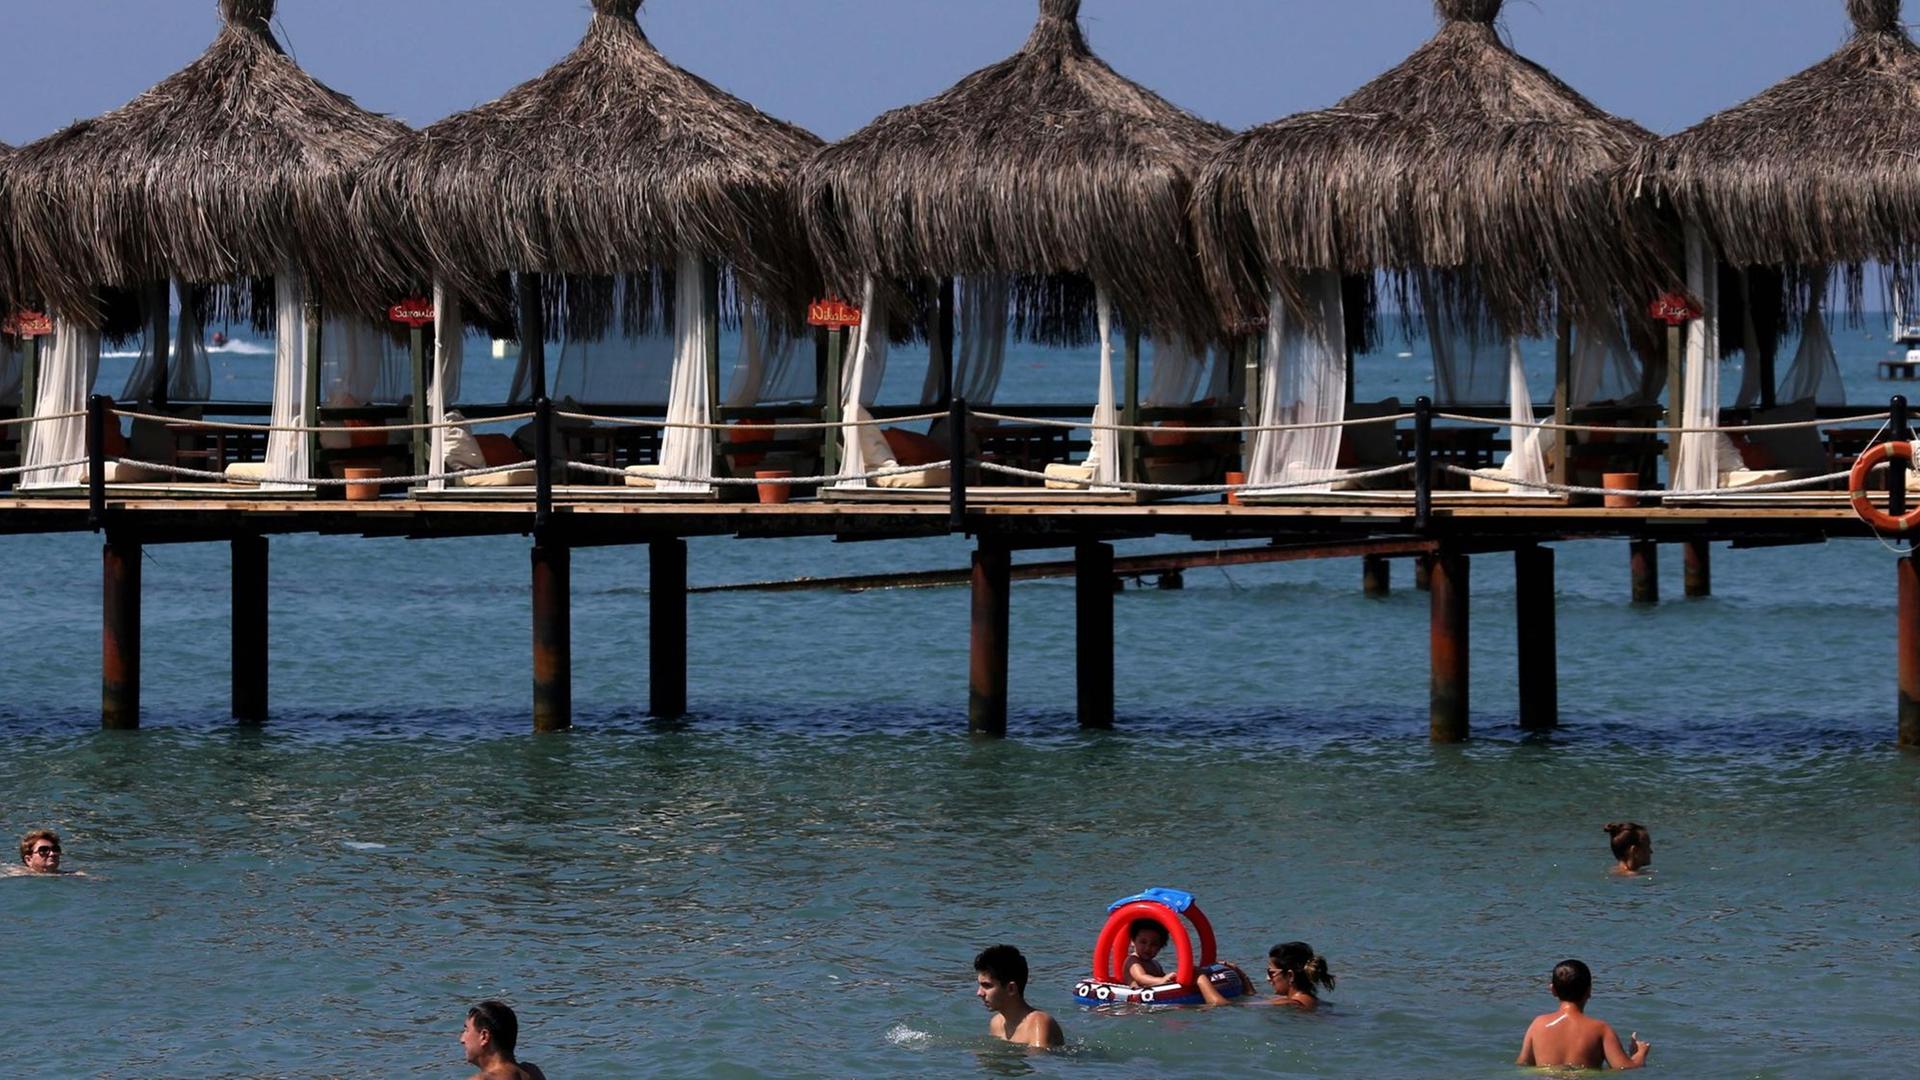 Urlaubsgäste schwimmen im Meer am Strand von Antalya. Dahinter einer Anlage mit Sonnenschirmen und Liegen, die auf Holzpfälen über dem Wasser aufgestellt ist.